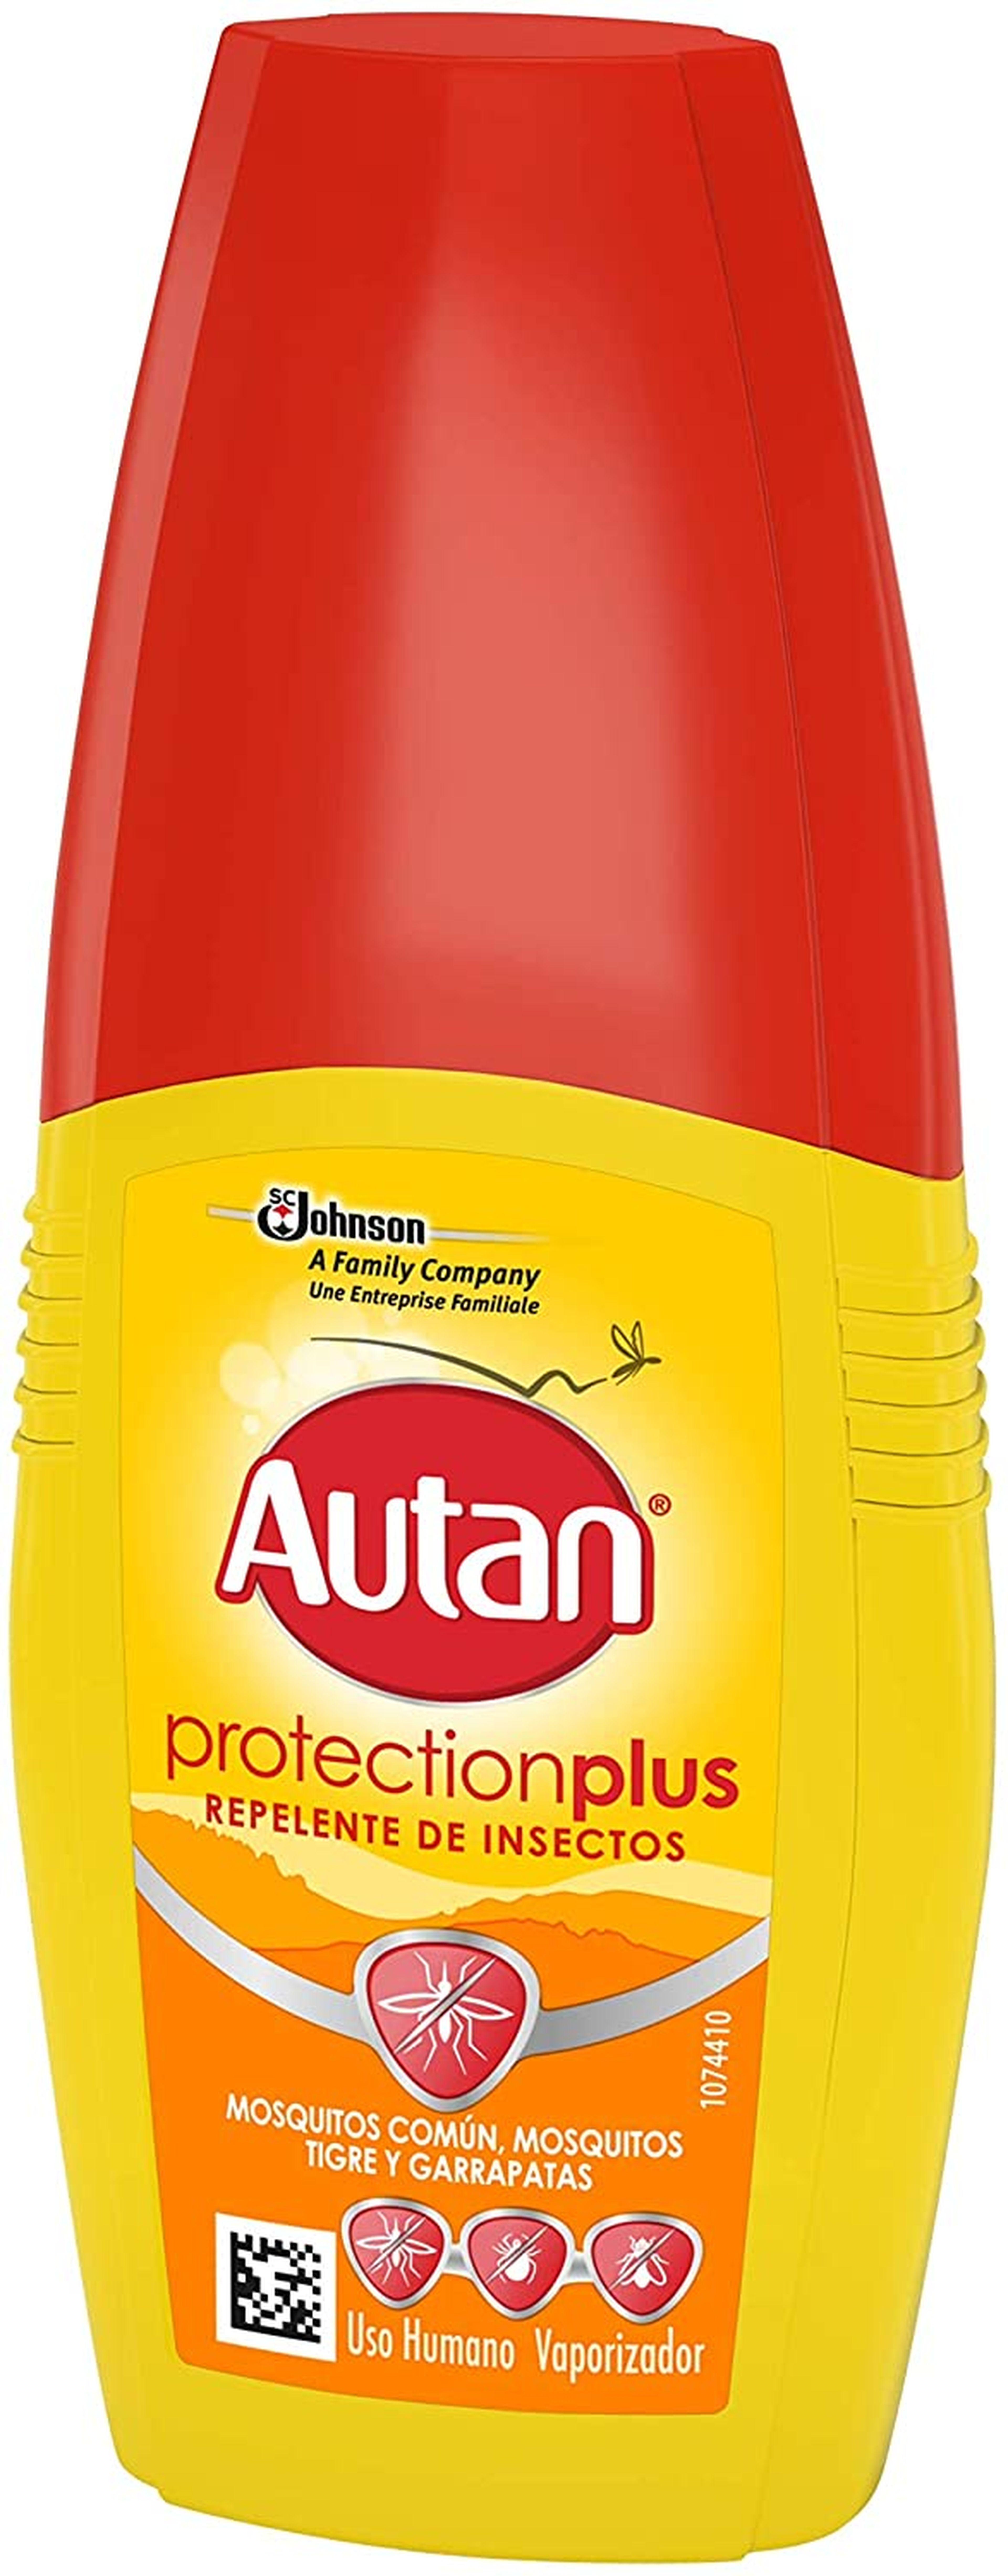 Autan Protection Plus